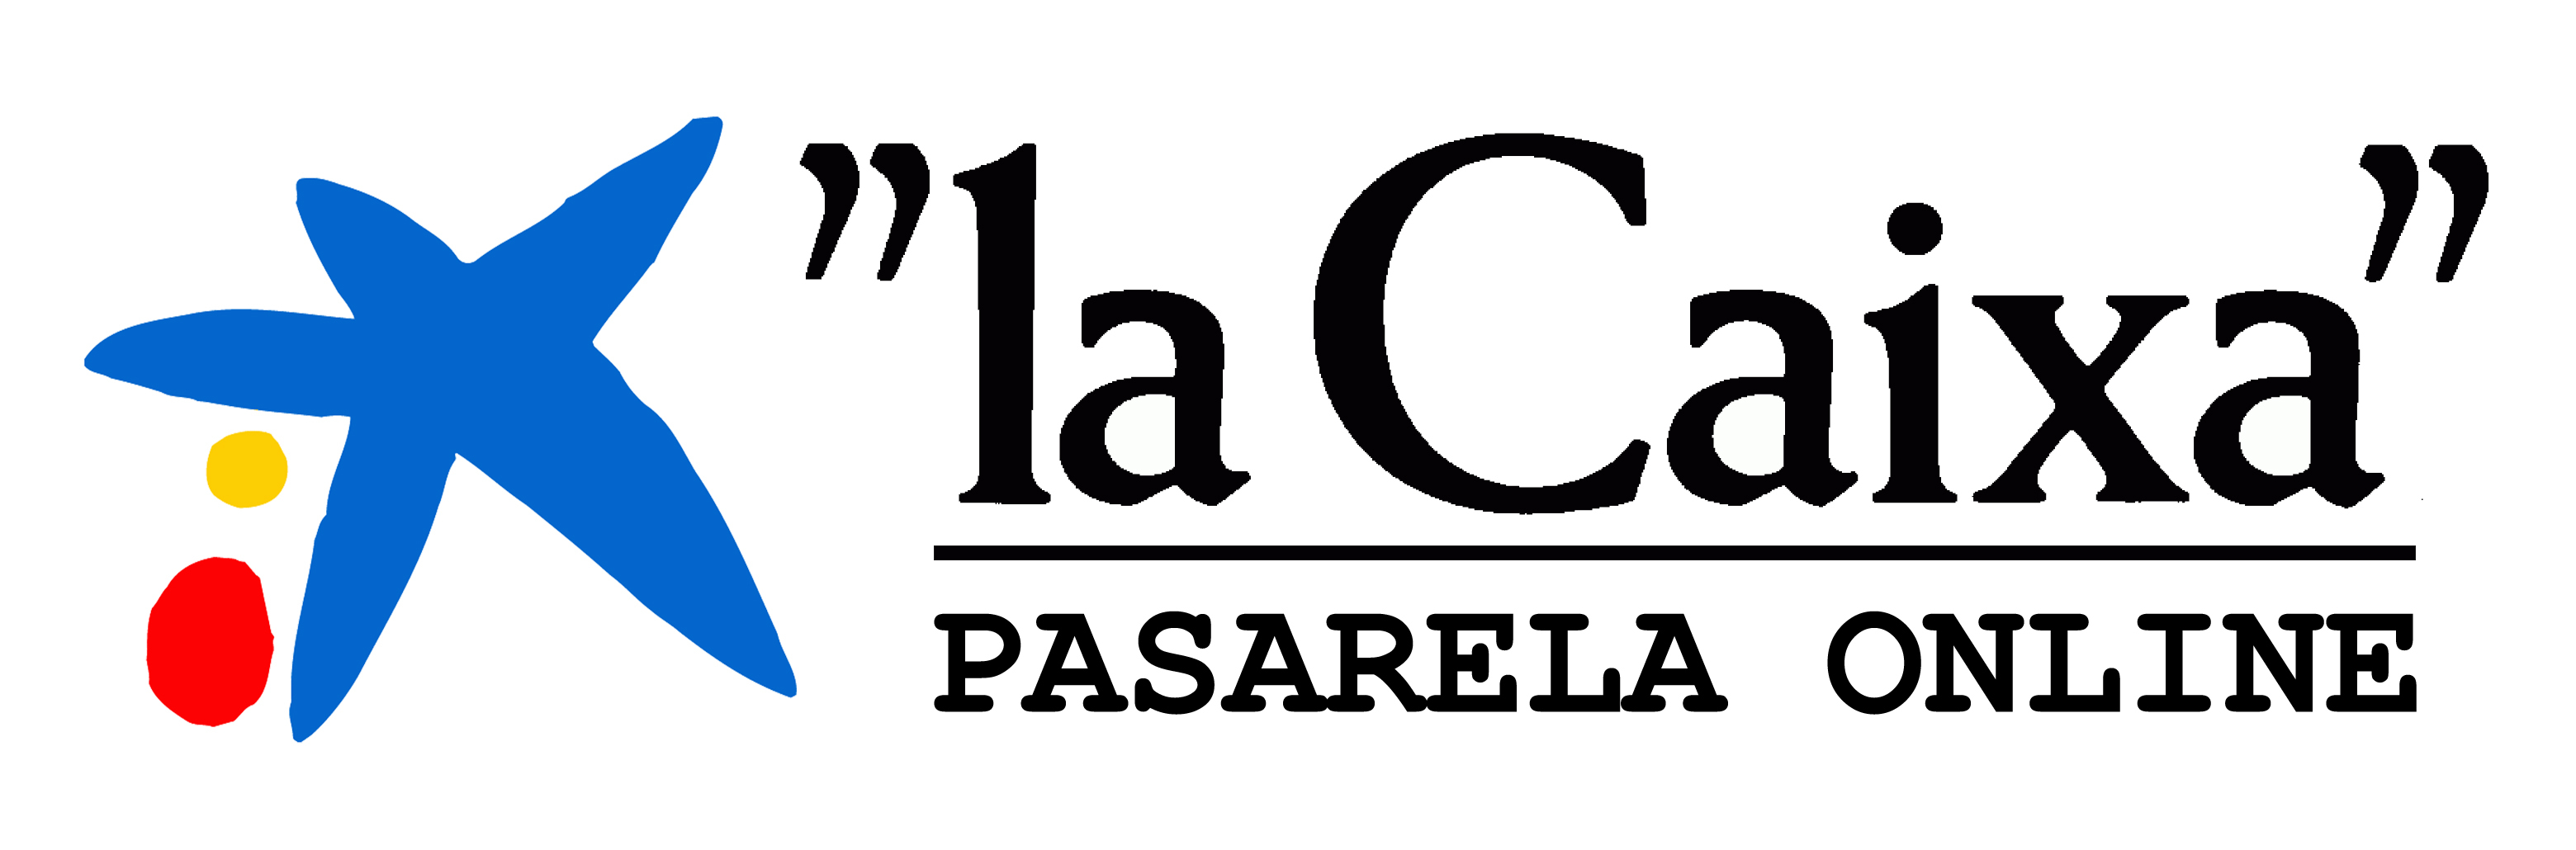 La Caixa Pasarela Online | www.decocolchon.es